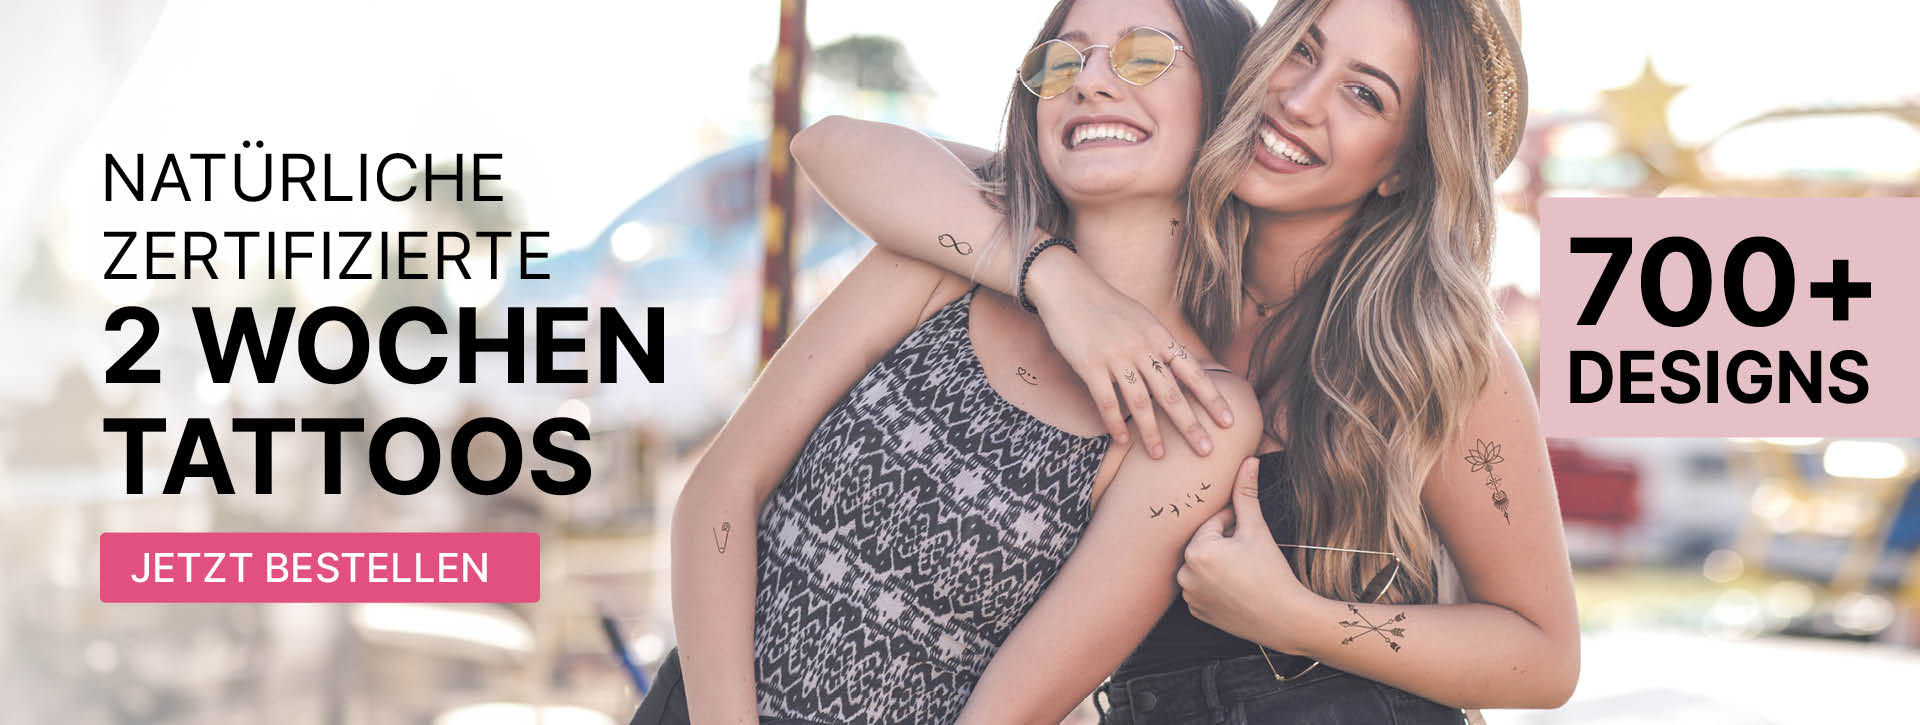 Das minink Header-Bild für Desktop zeigt zwei sommerlich gekleidete Frauen, die glücklich sind und lächeln. Auf der Haut tragen sie verteilt die zertifizierten temporären Tattoos von minink, die bis zu 2-Wochen halten.